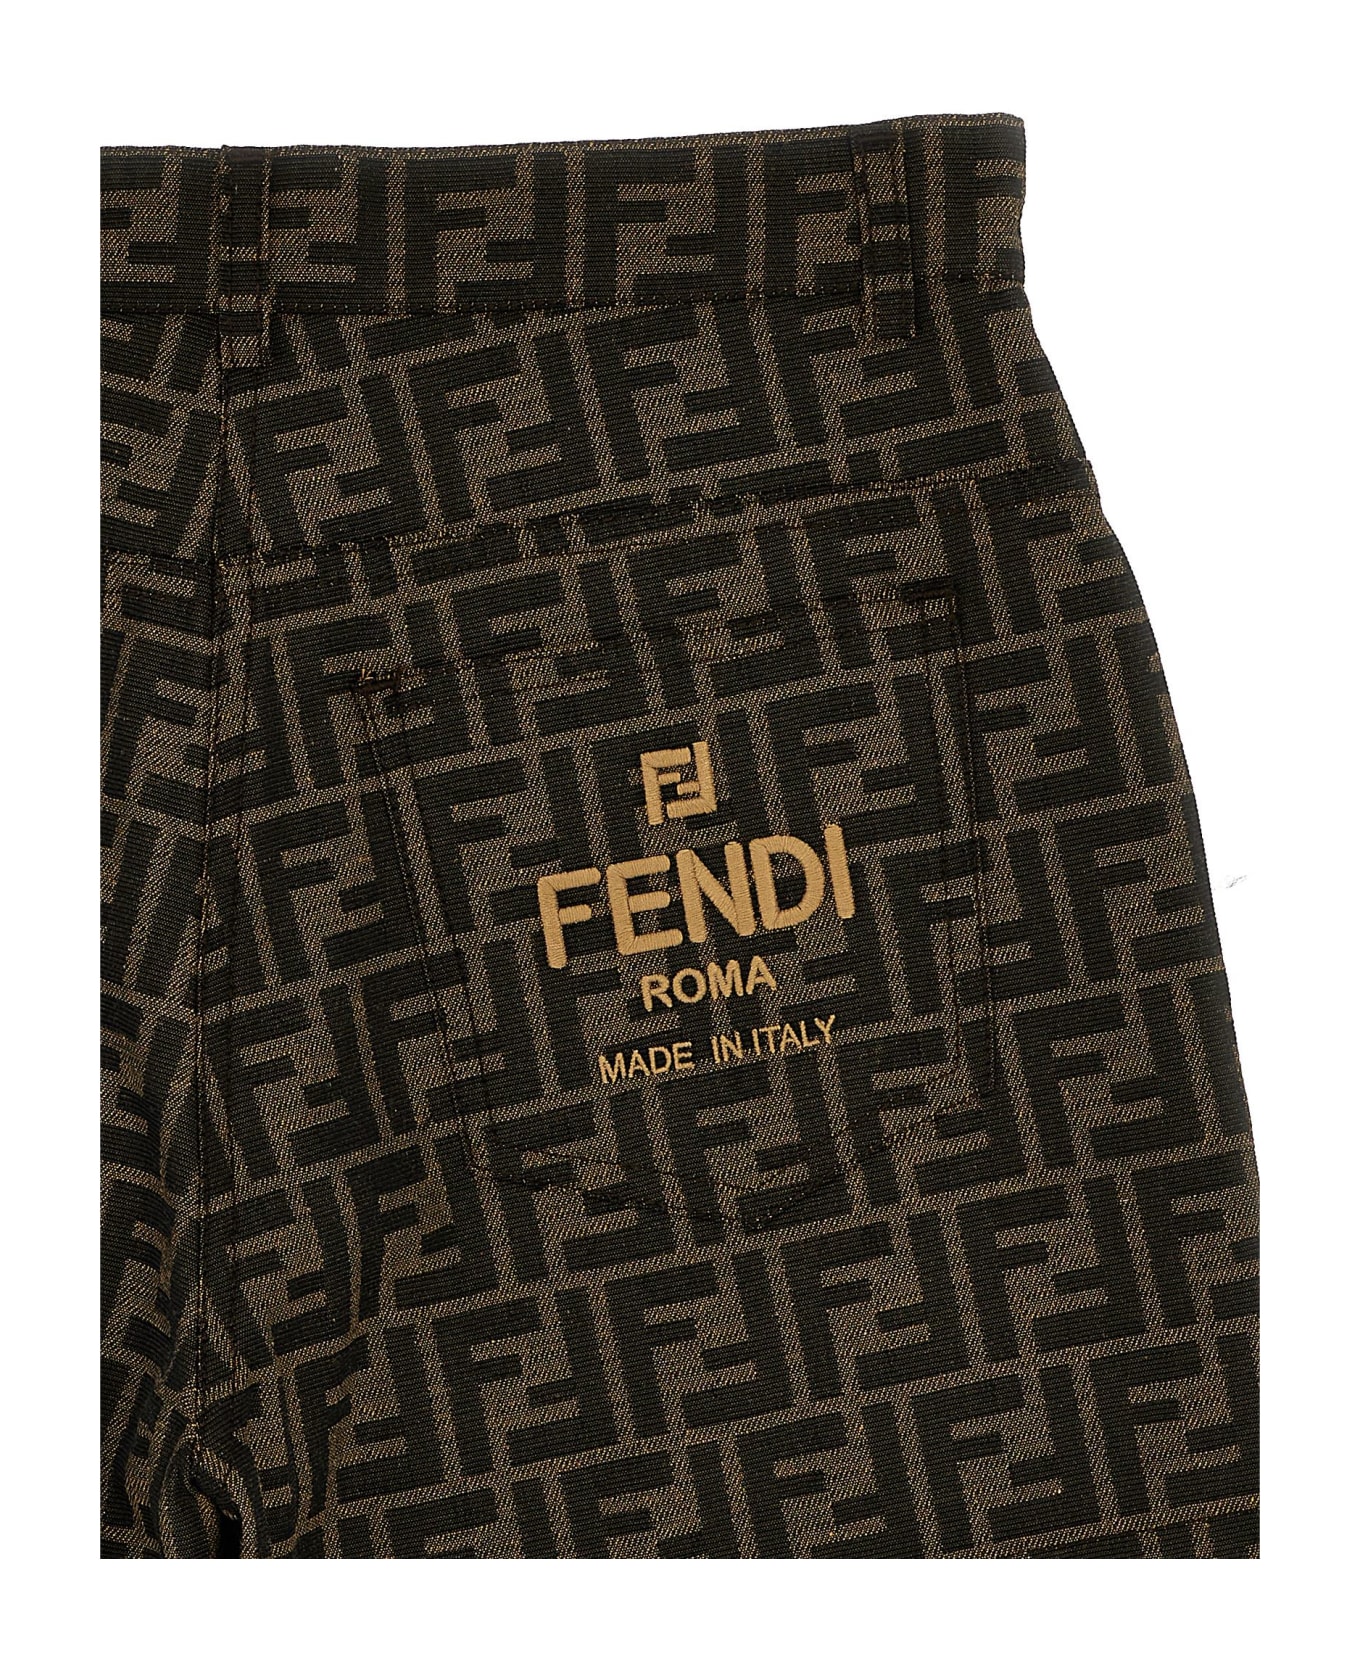 Fendi Ff Shorts - Marrone